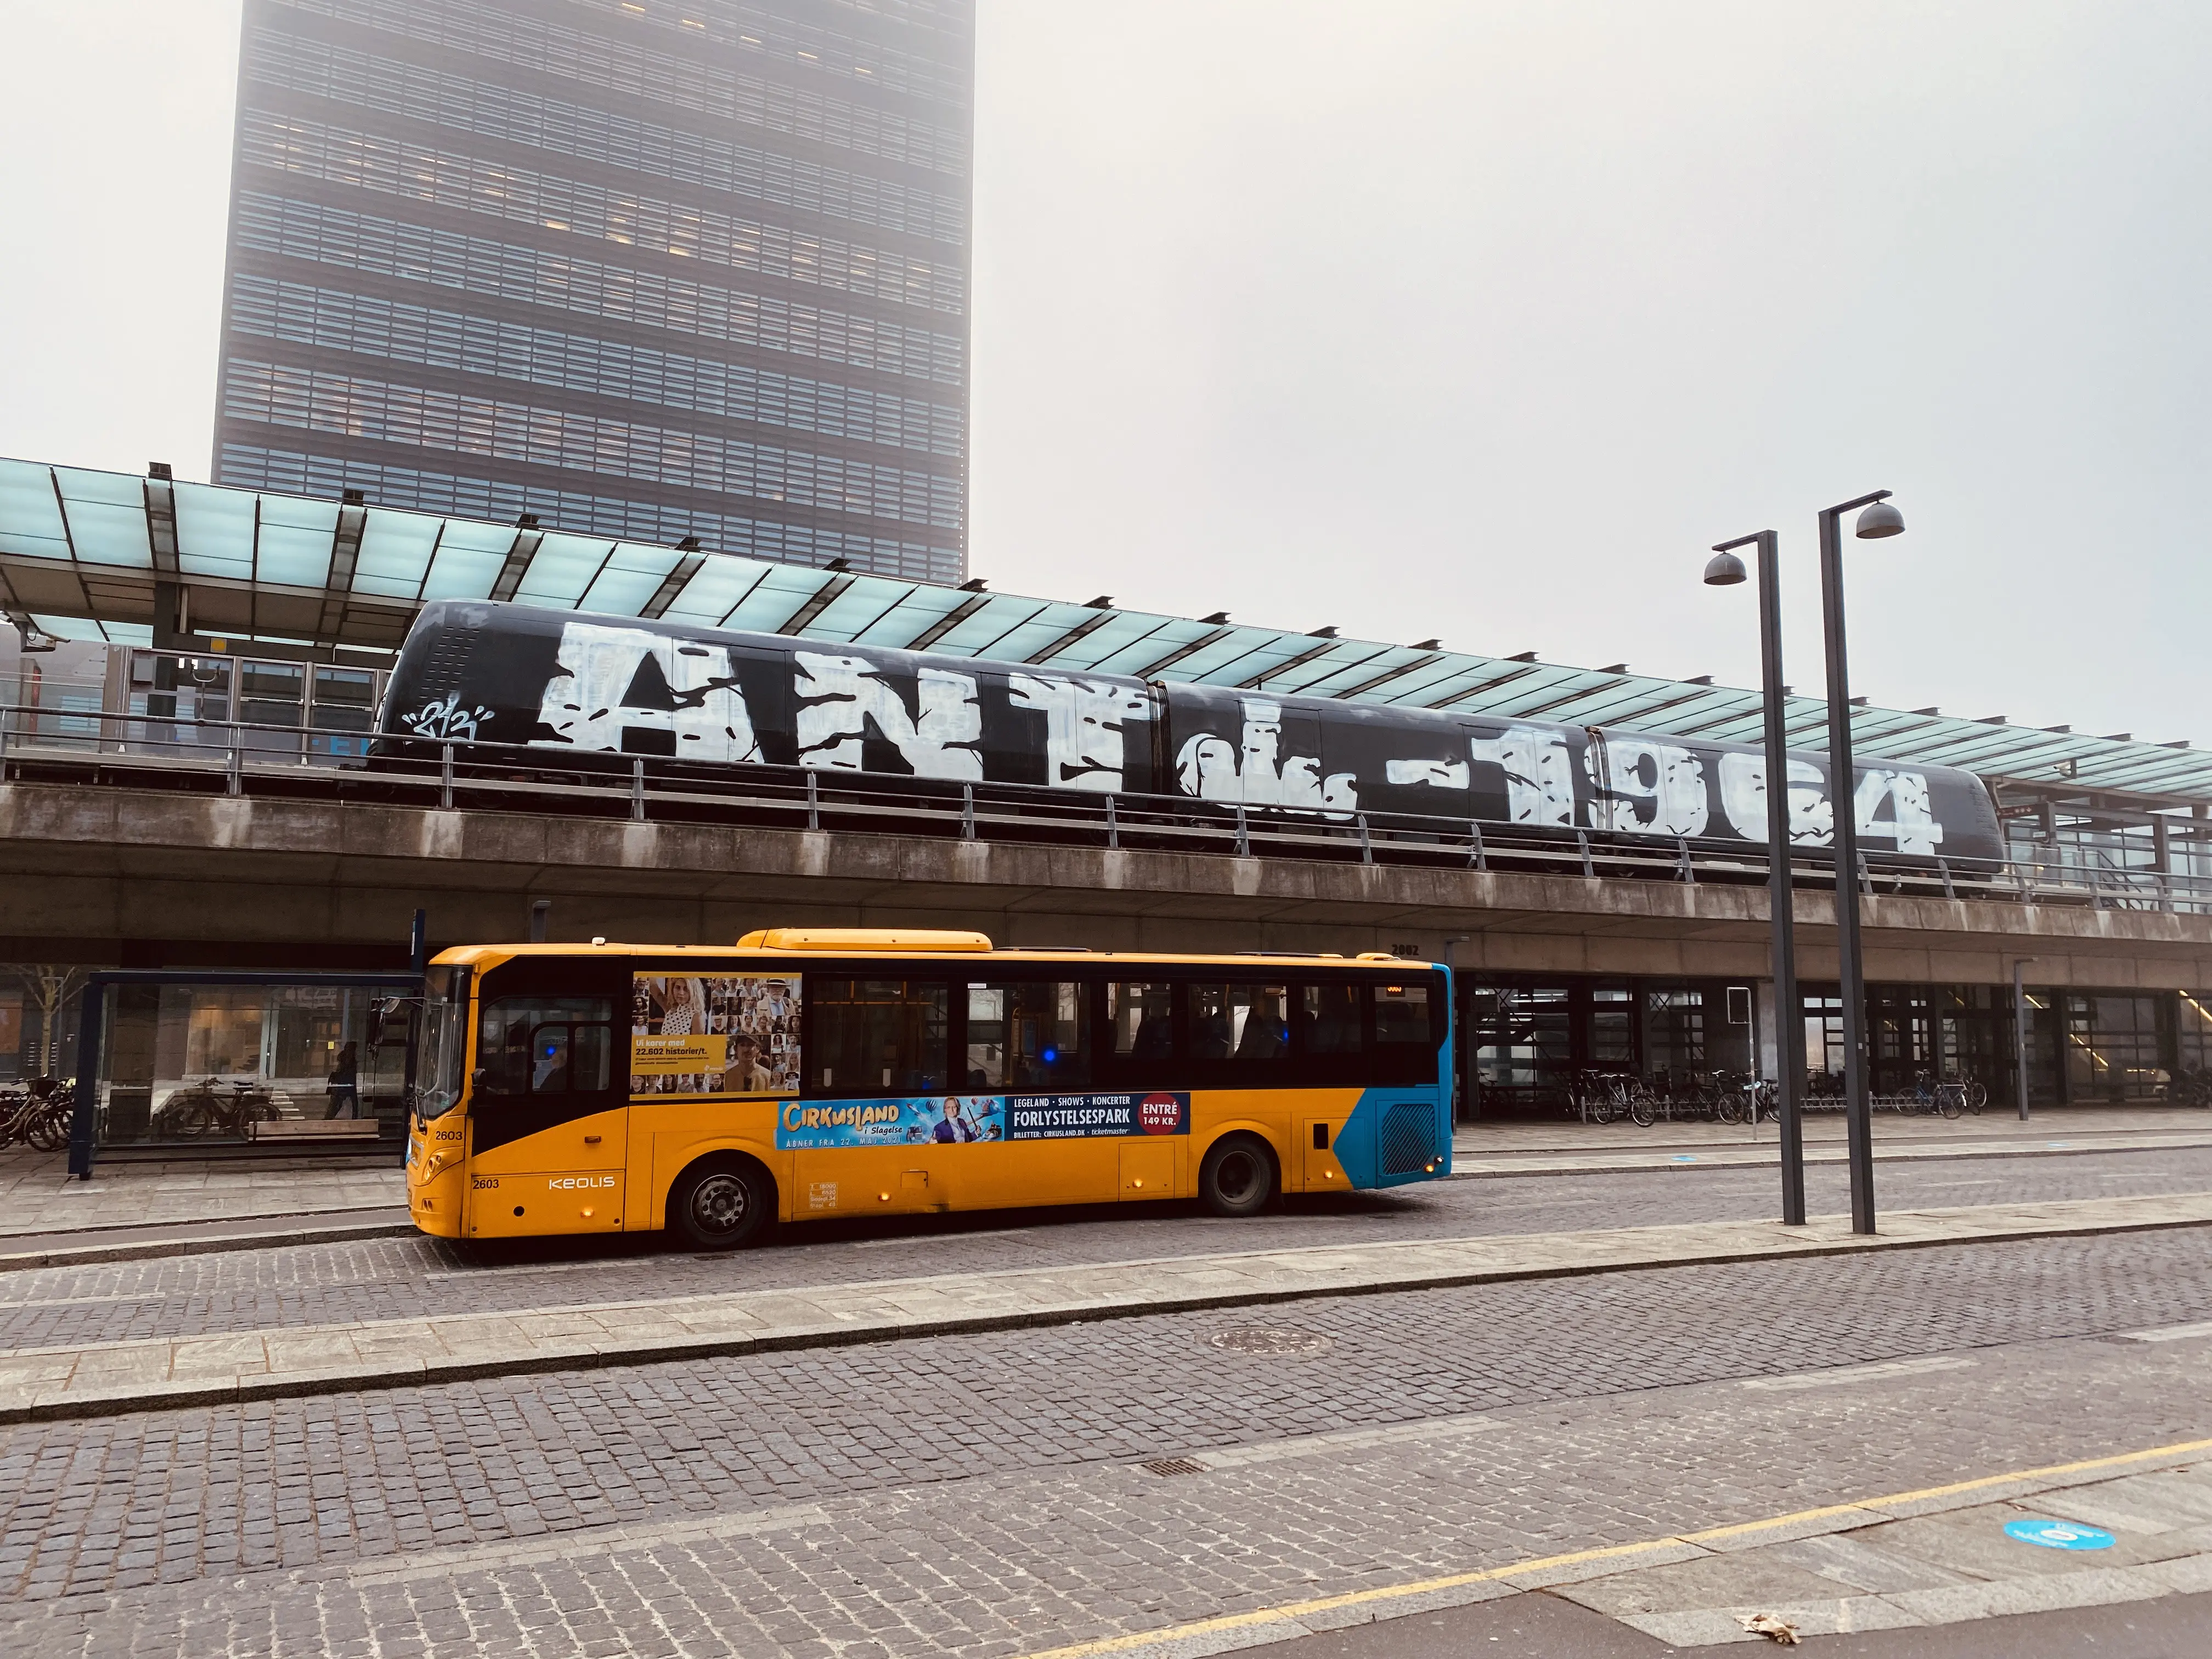 Billede af Ørestad Metrostation med "grafittig" metrotog på parron.